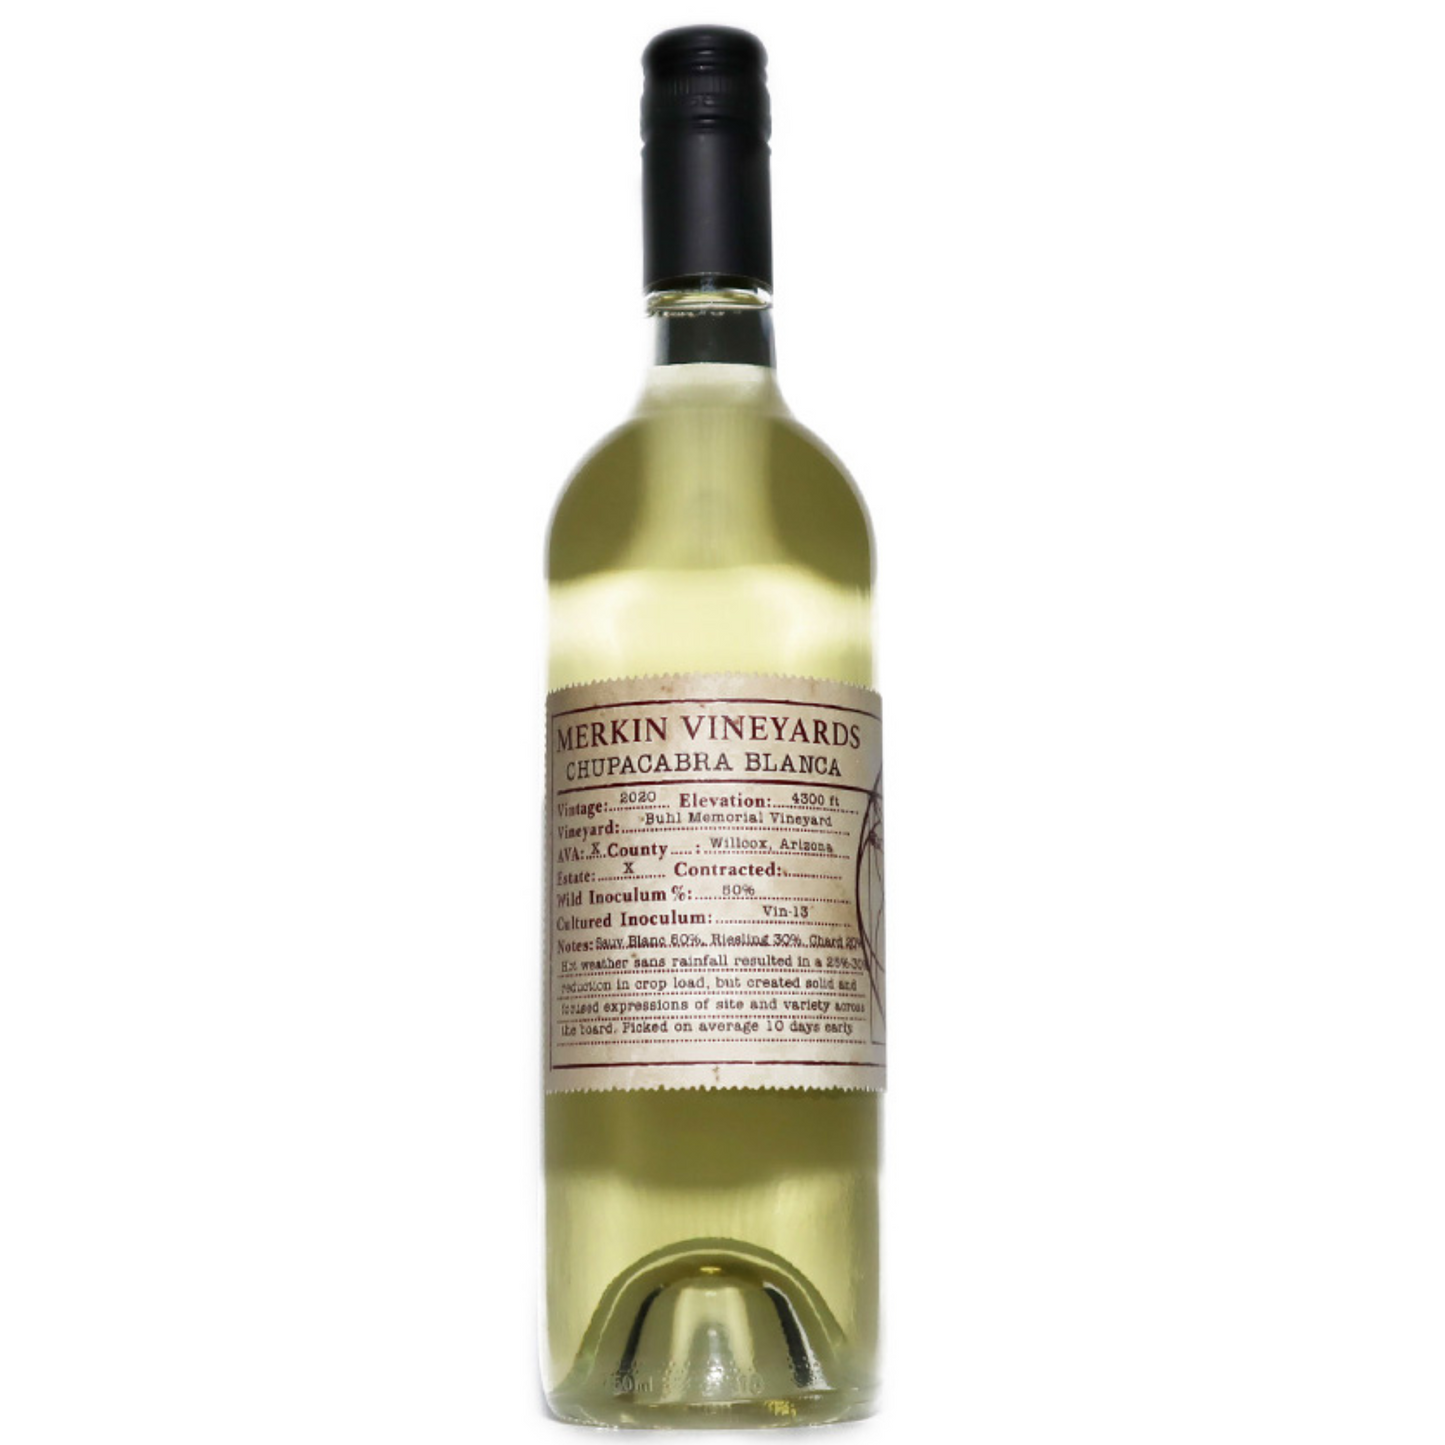 Merkin Vineyards Chupacabra Blanca 2022 (750 ml)